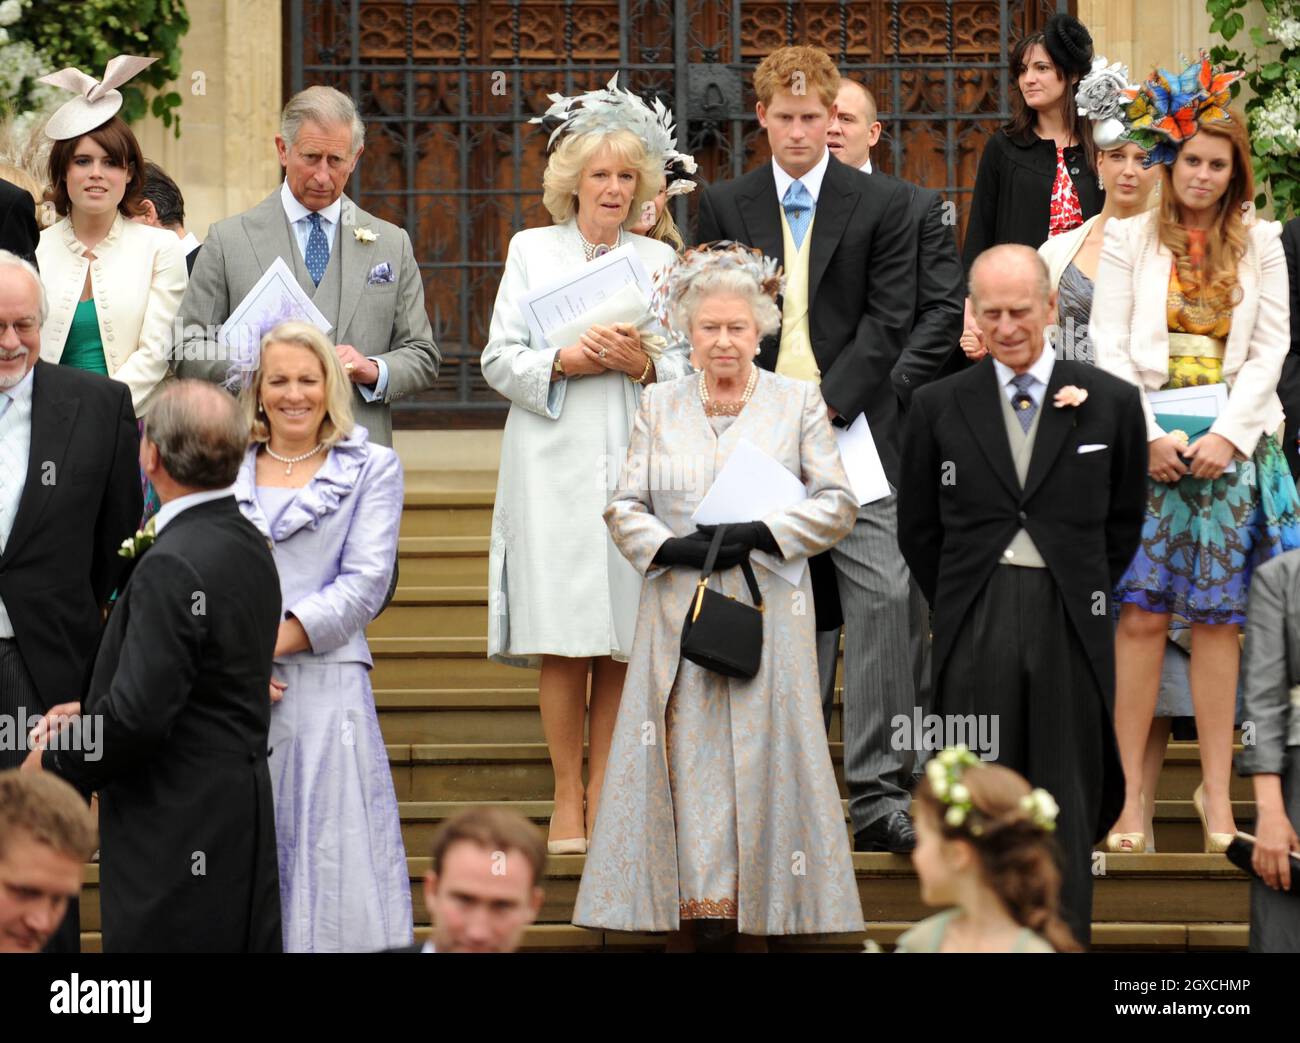 (De gauche à droite) le Prince Charles, Prince de Galles, Camilla Duchesse de Cornwall, la reine Elizabeth II, le prince Harry, le prince Philip, le duc d'Édimbourg et la princesse Beatrice quittent la chapelle Saint-Georges après la cérémonie de mariage de Peter Phillips et Autumn Kelly au château de Winsor, à Windsor. Banque D'Images